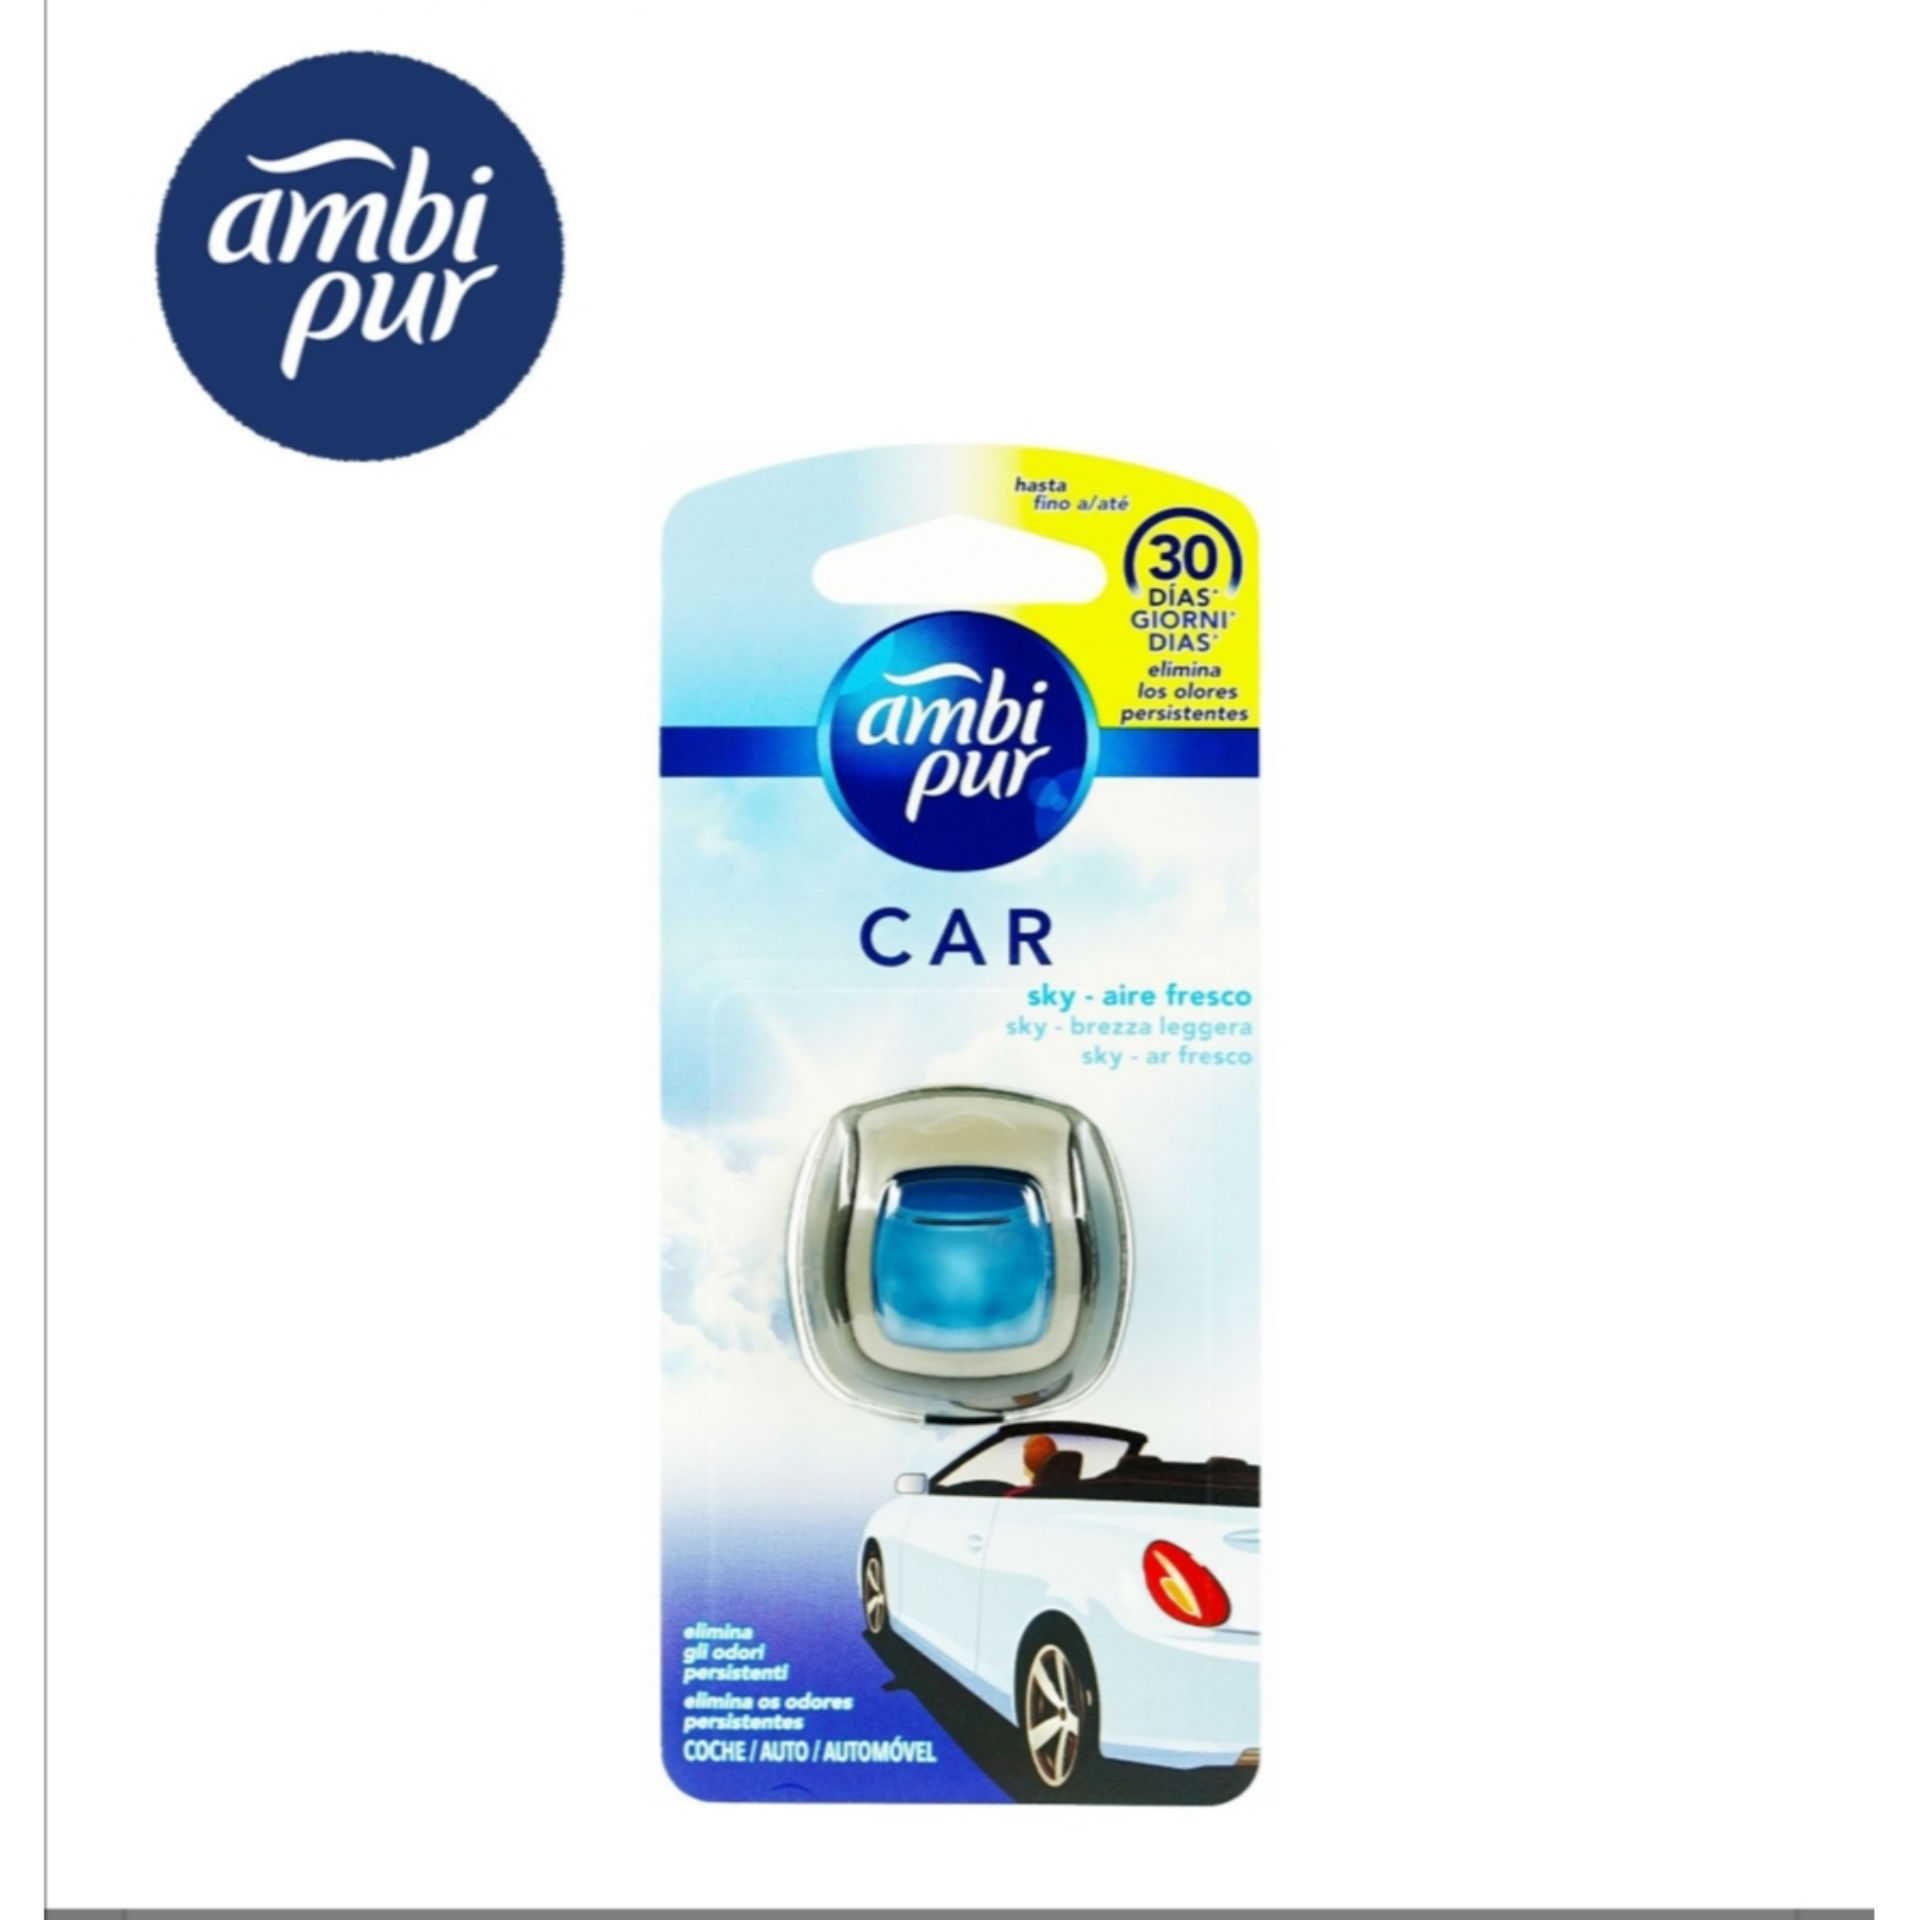 AMBIPUR CAR USA&GETTA SKY -536-Ambipur